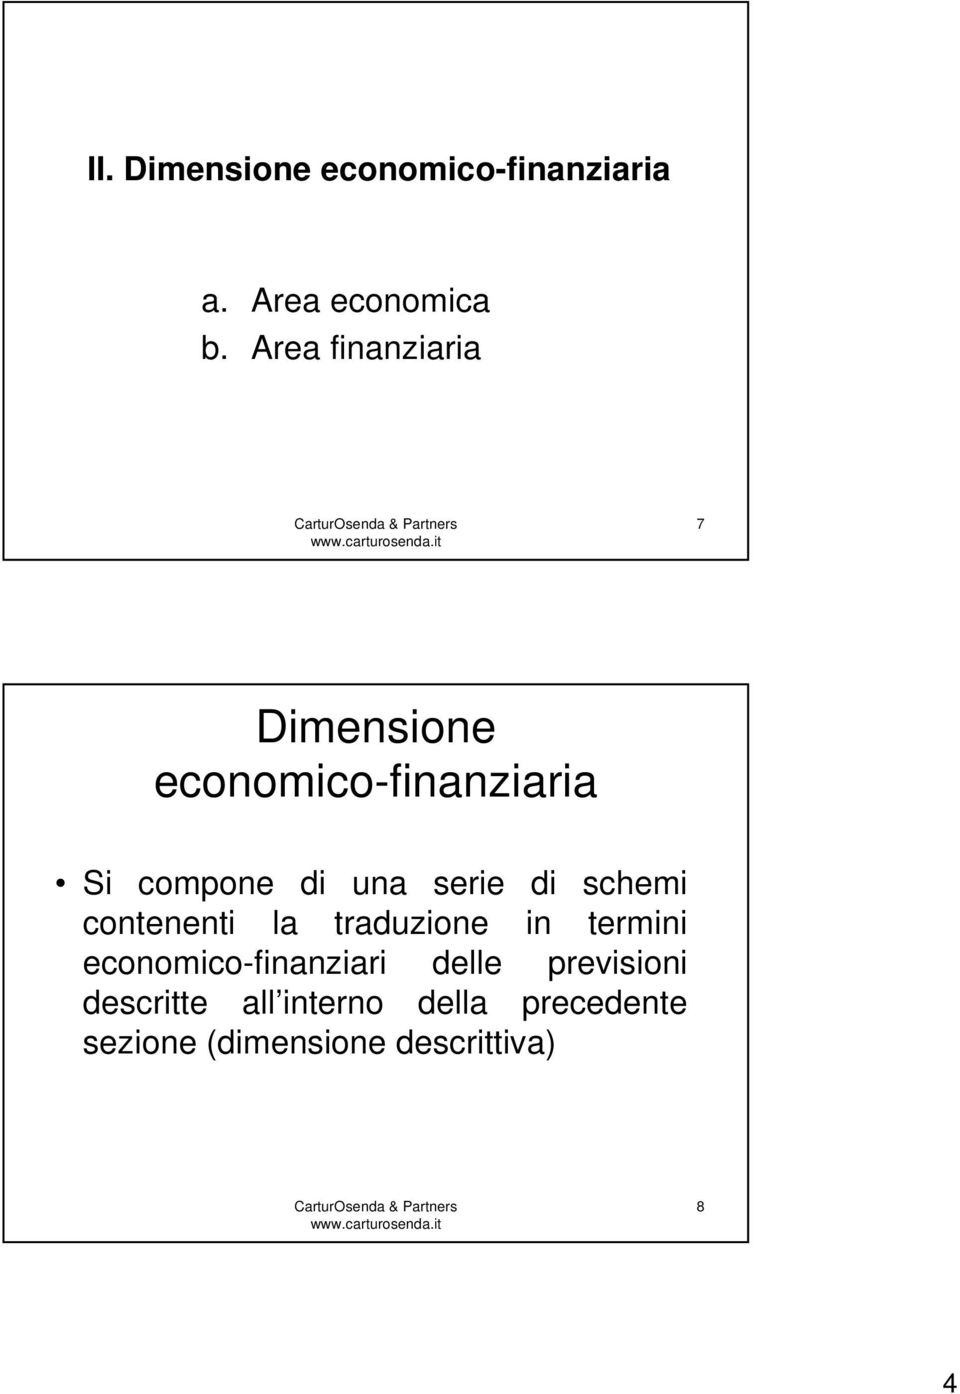 serie di schemi contenenti la traduzione in termini economico-finanziari